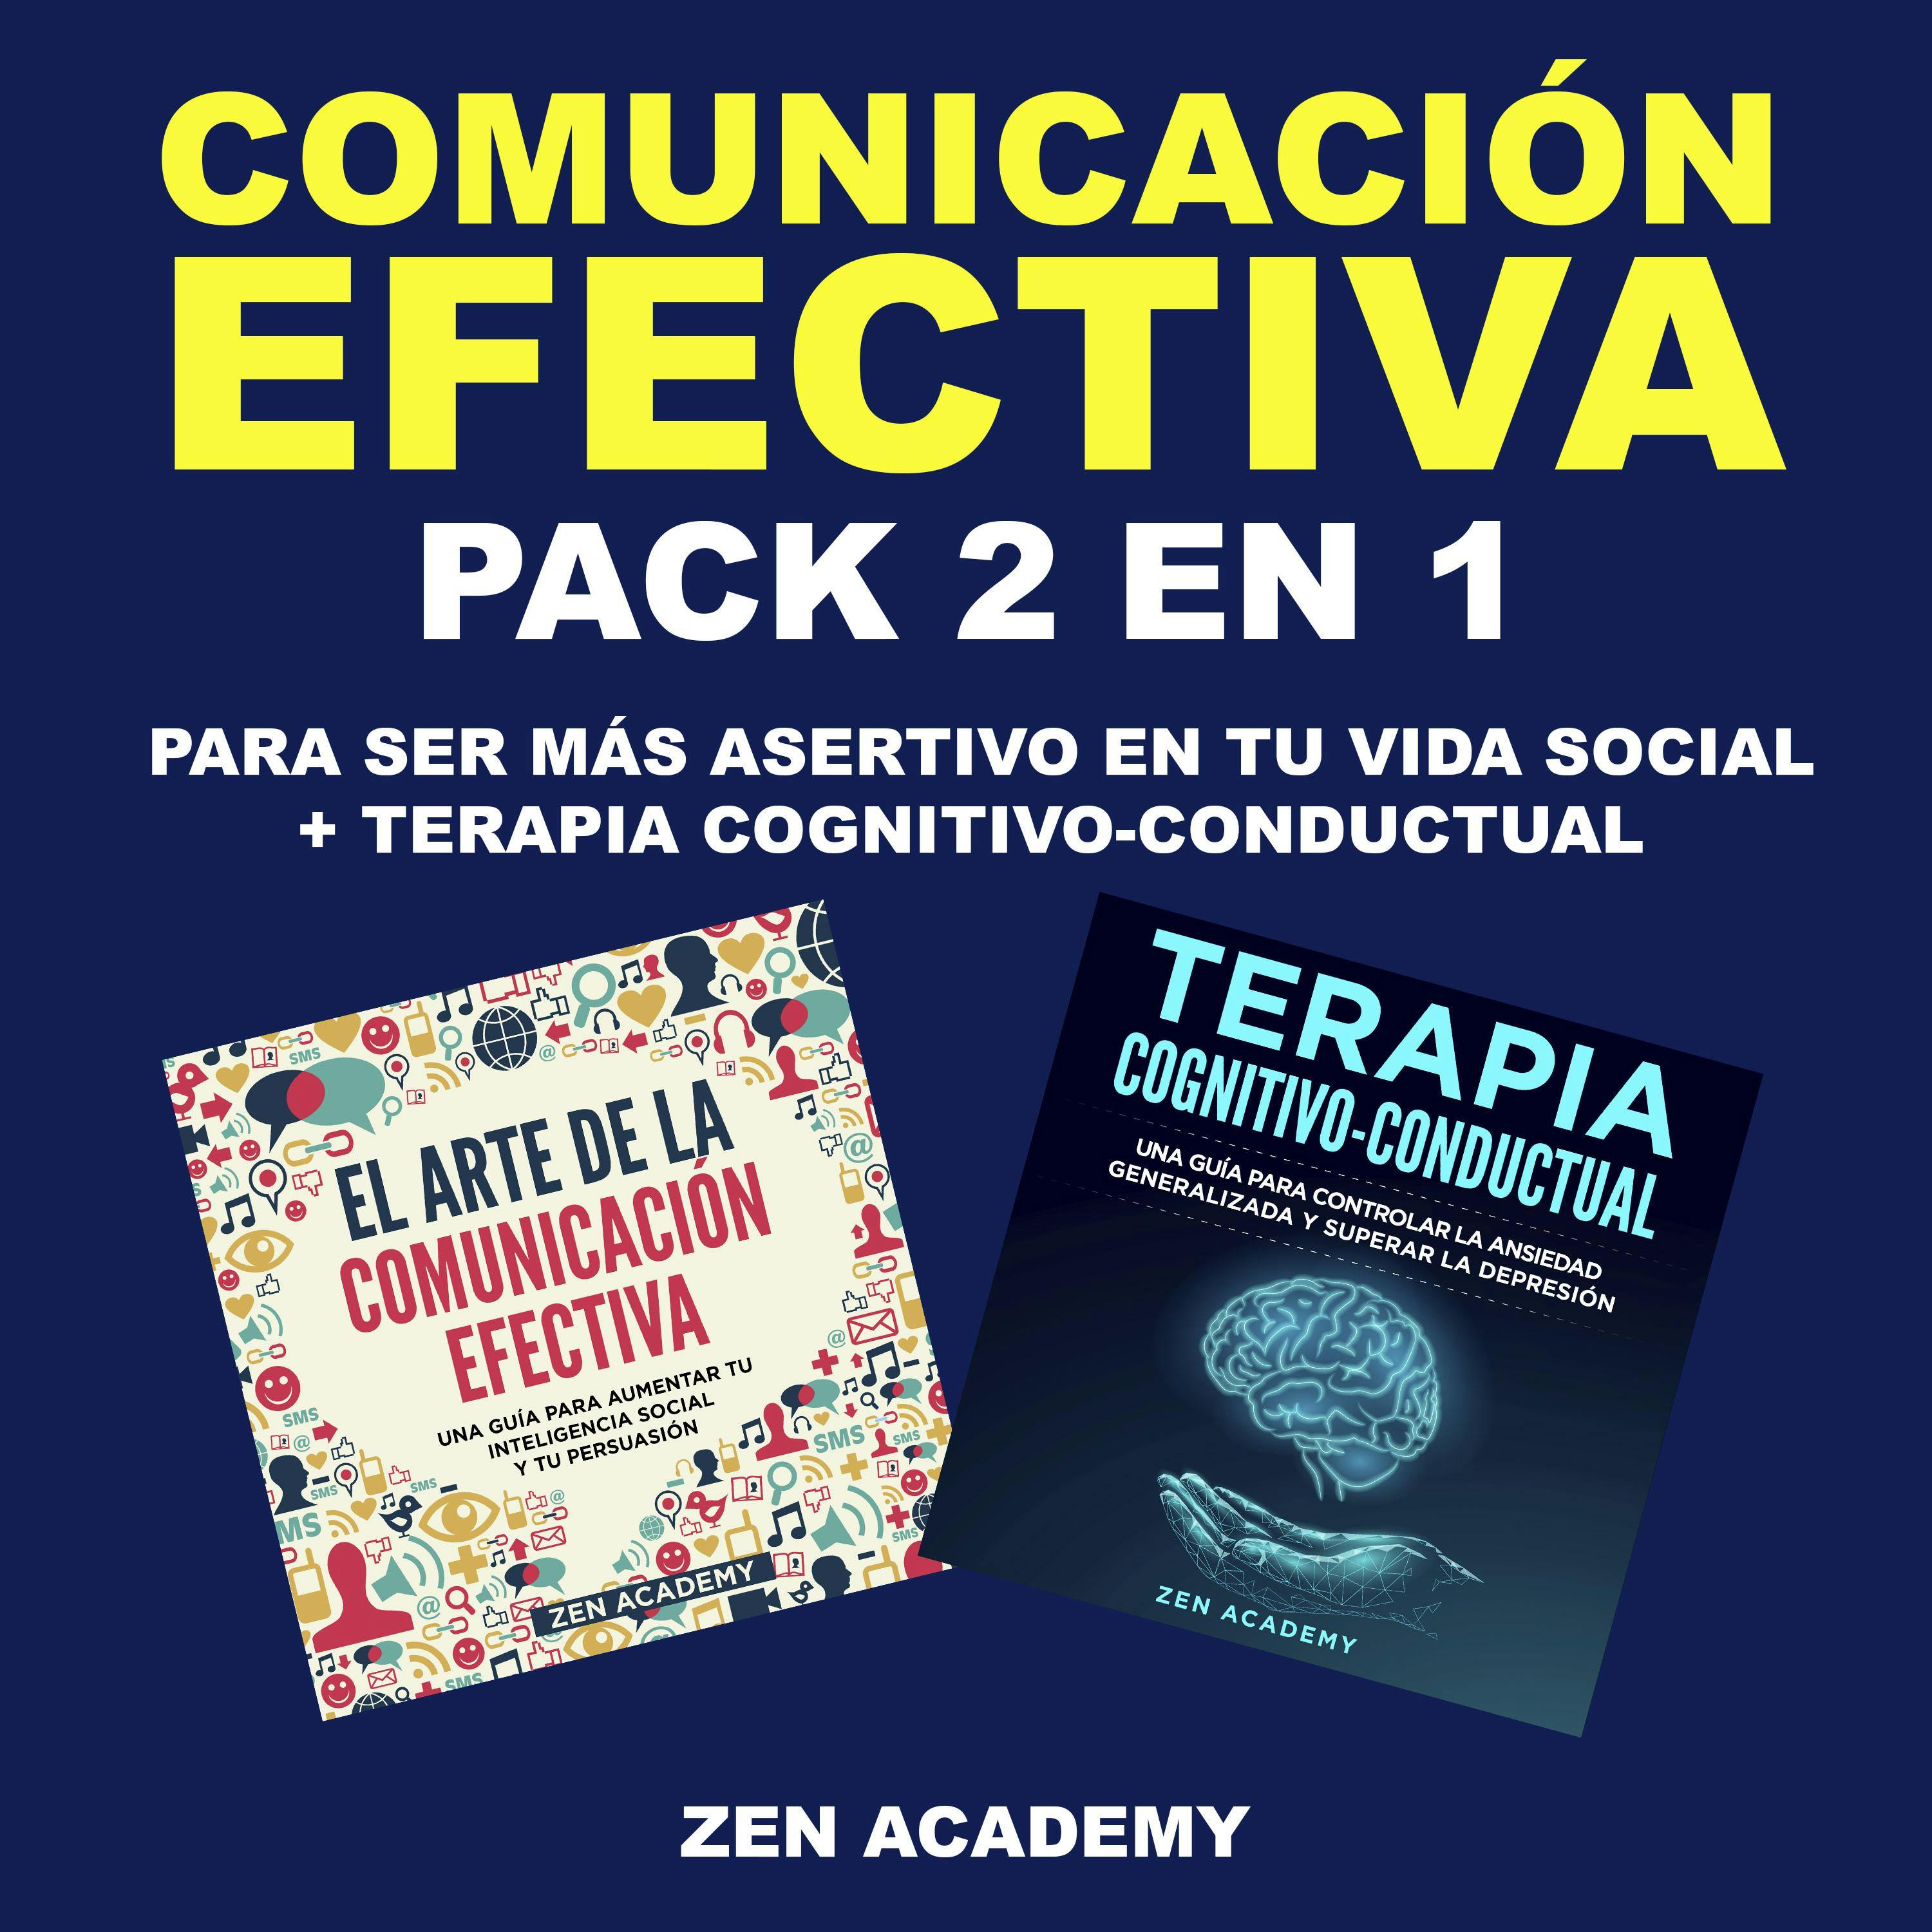 Comunicación Efectiva: Pack 2 en 1 para ser más asertivo en tu vida social + Terapia Cognitivo-Conductual - undefined